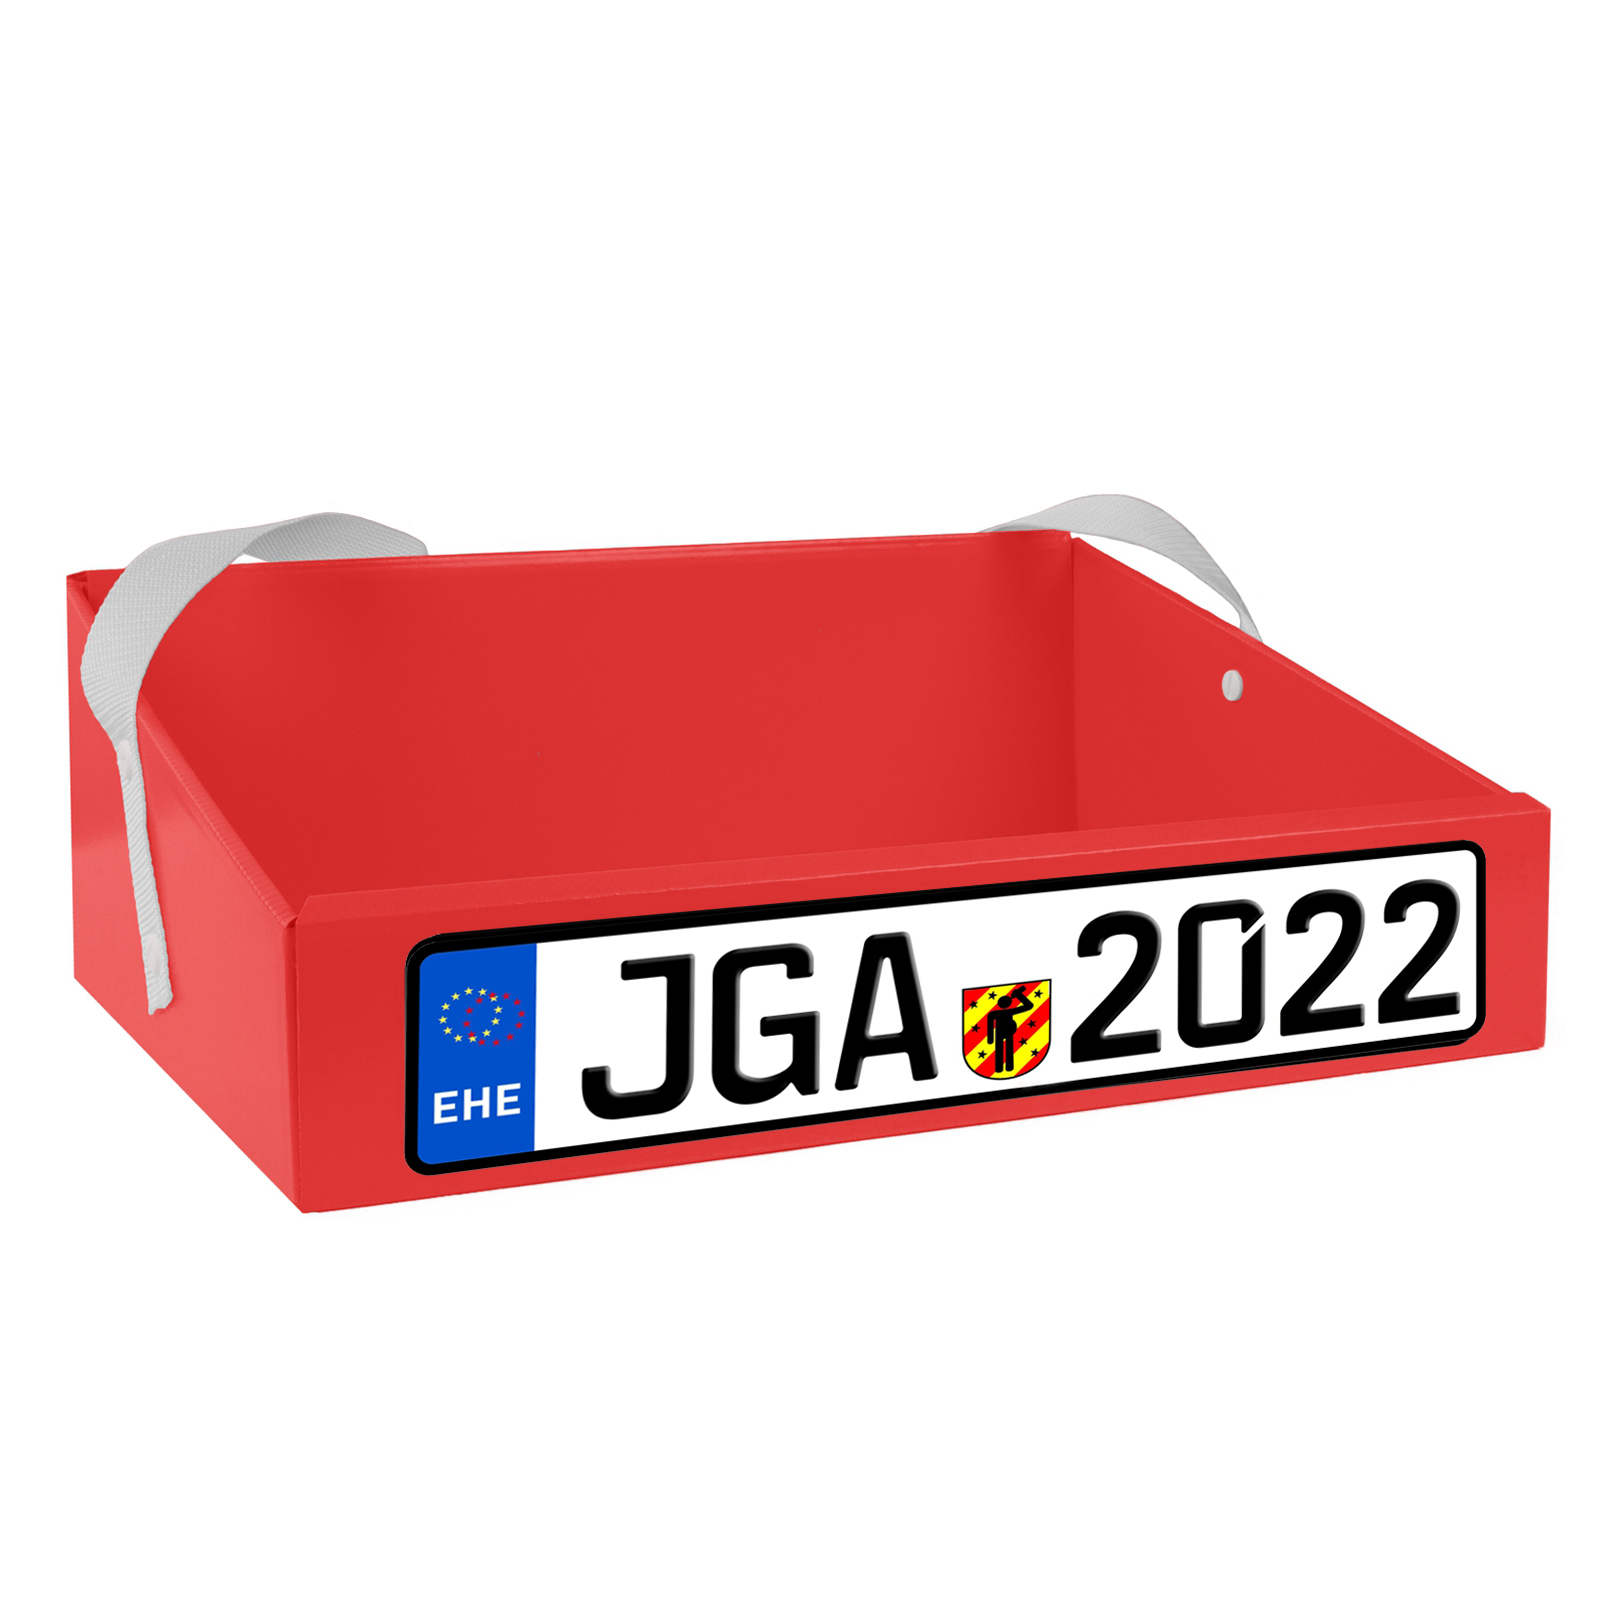 Bauchladen Kfz Jga 2022 rot